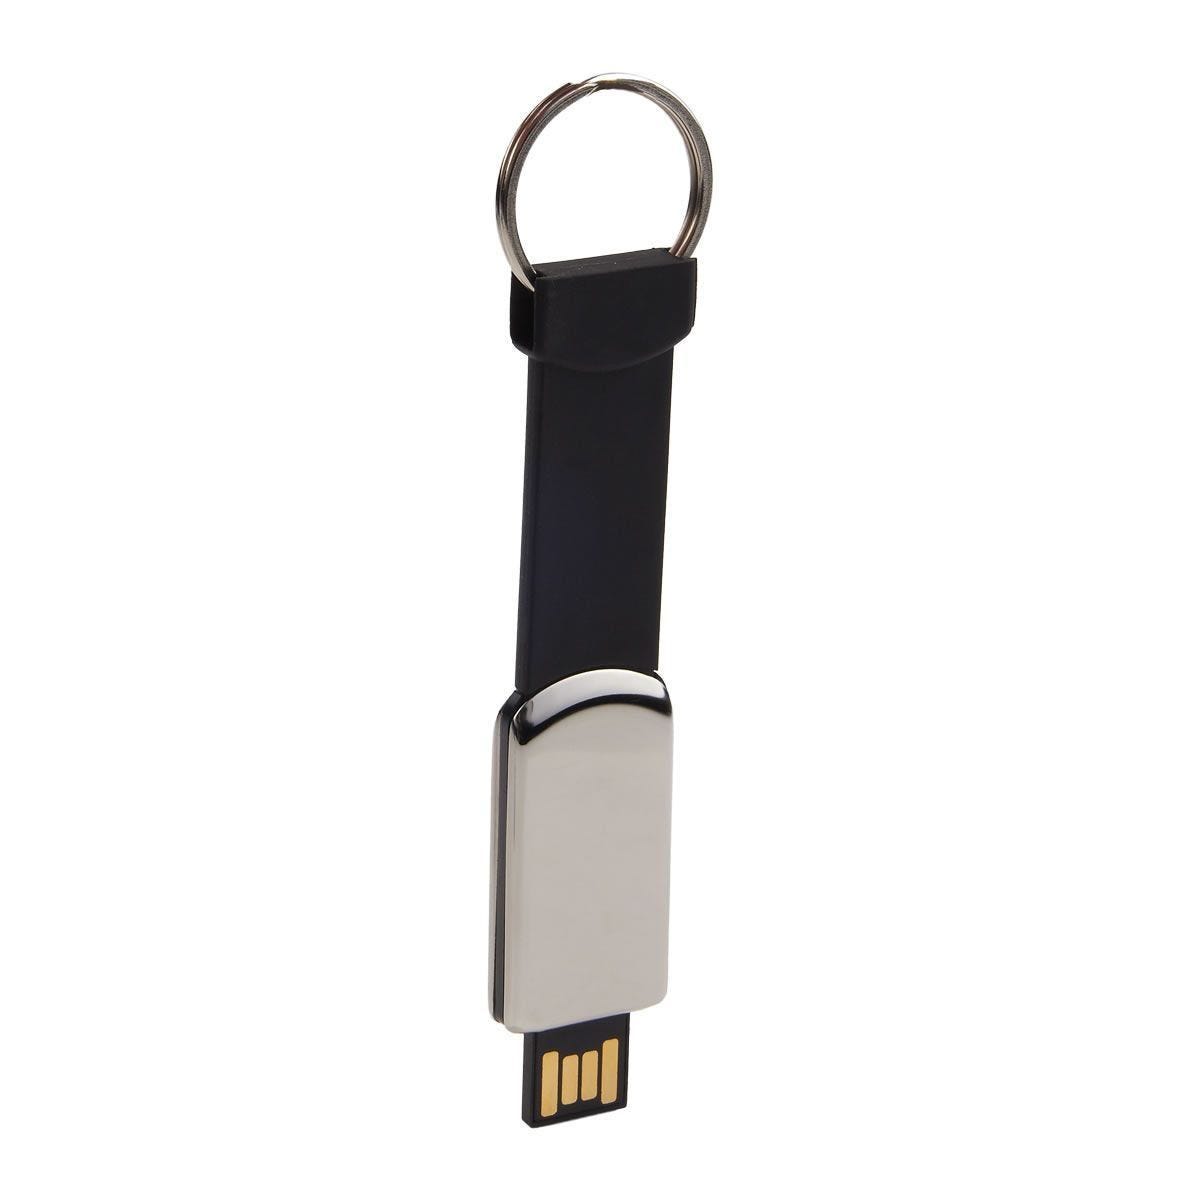 USB 221, USB BOULIA 16 GB. memoria USB para transmisión de datos, con diseño retráctil. Incluye argolla para llaves y caja individual.